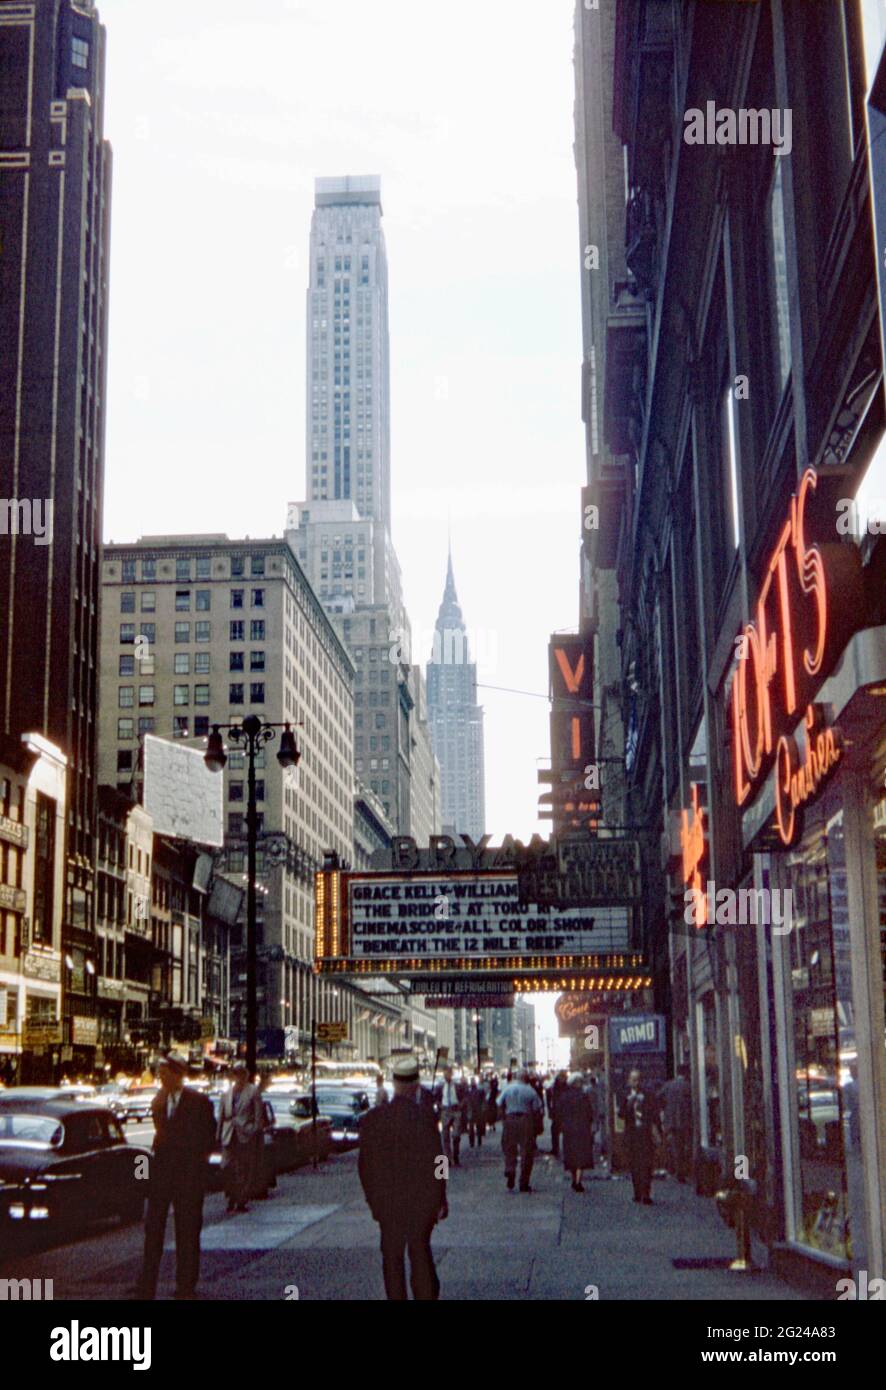 Blick Richtung Westen 42nd Street, New York City, USA im Jahr 1955. Das Bryant Theatre zeigt ‘The Bridges of Toko-Ri’, einen koreanischen Kriegsfilm mit Grace Kelly und William Holden. In der Ferne befindet sich der berühmte Art déco-Wolkenkratzer des Chrysler Building. Hell erleuchtet von Neon, ist es der Mittelpunkt des Broadway Theatre District. Dieses Bild stammt aus einer alten Kodak Farbtransparenz, die von einem Amateurfotografen aufgenommen wurde – einem Vintage-Foto aus den 1950er Jahren. Stockfoto